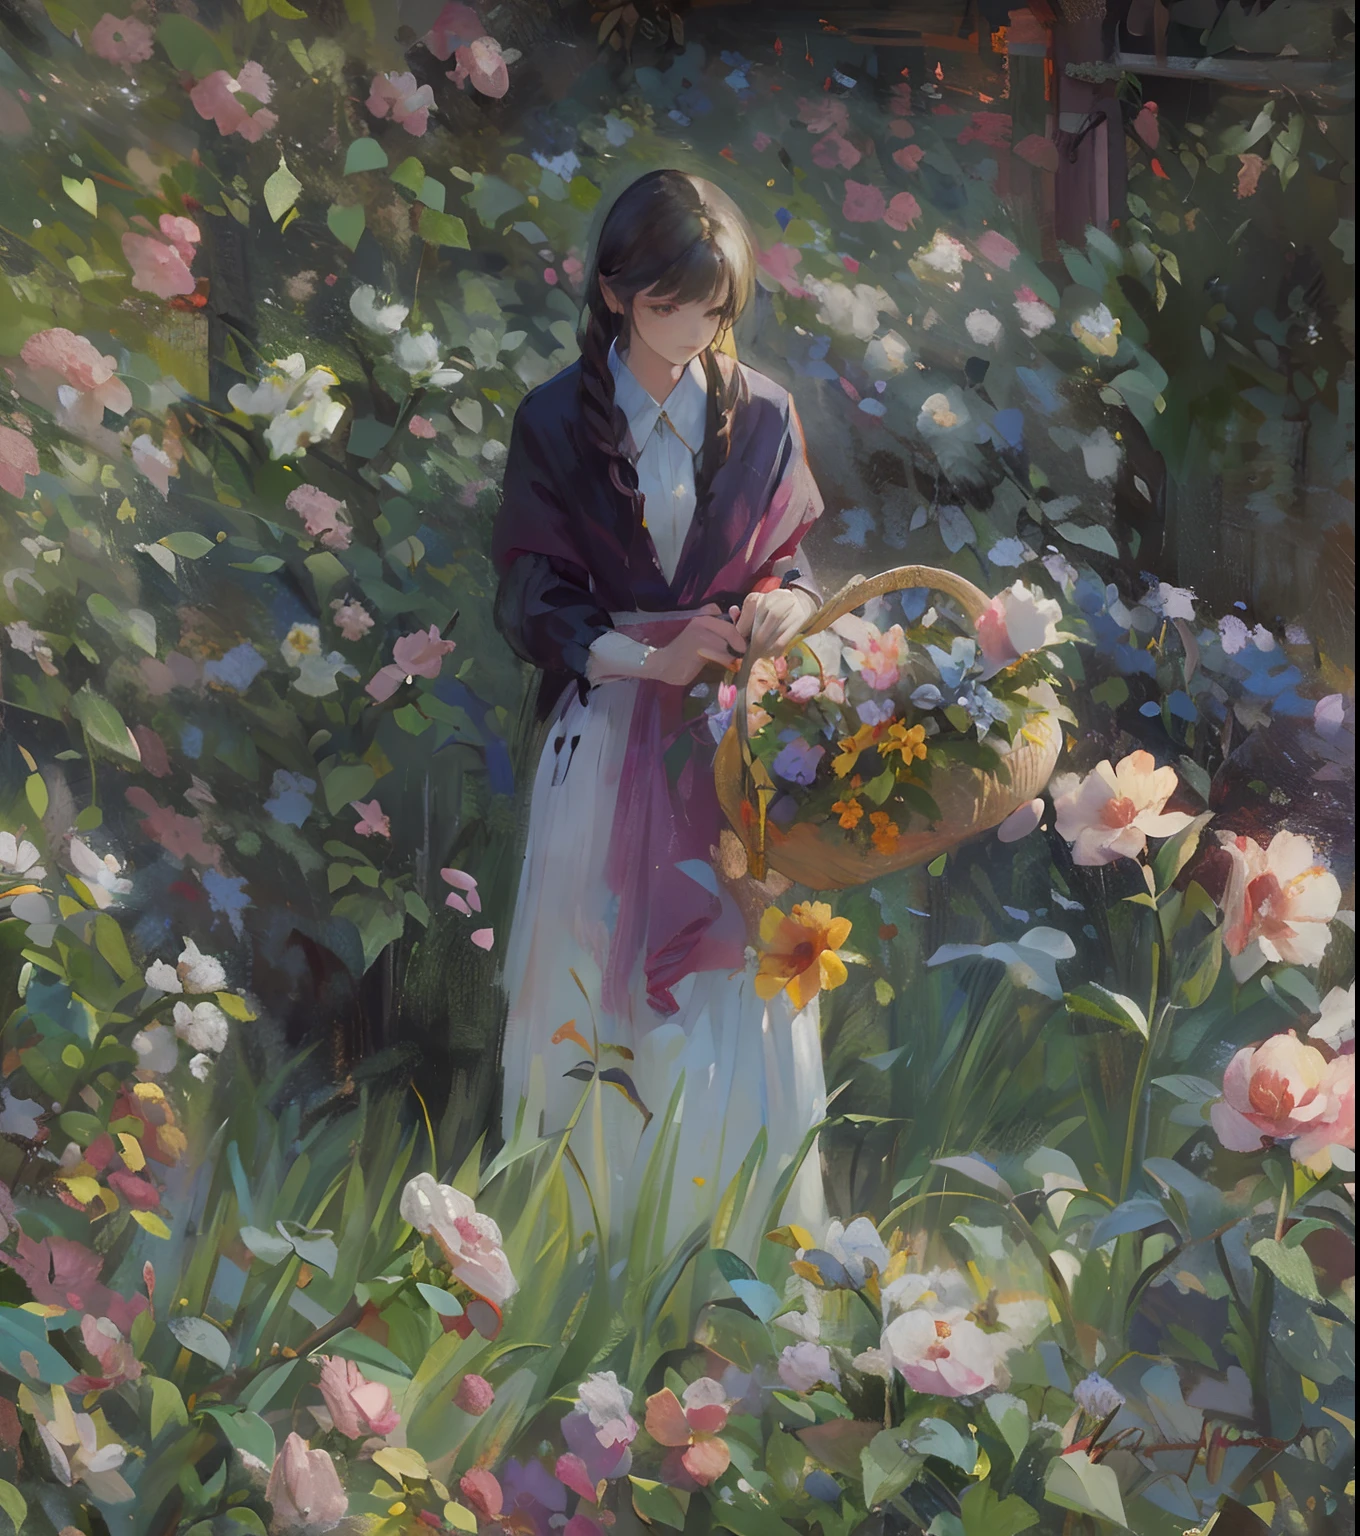 画中有一位妇女在花园中，身边有鲜花和一篮花, 采摘鲜花, 24k 分辨率, 艺术的, 印象派, 超详细,